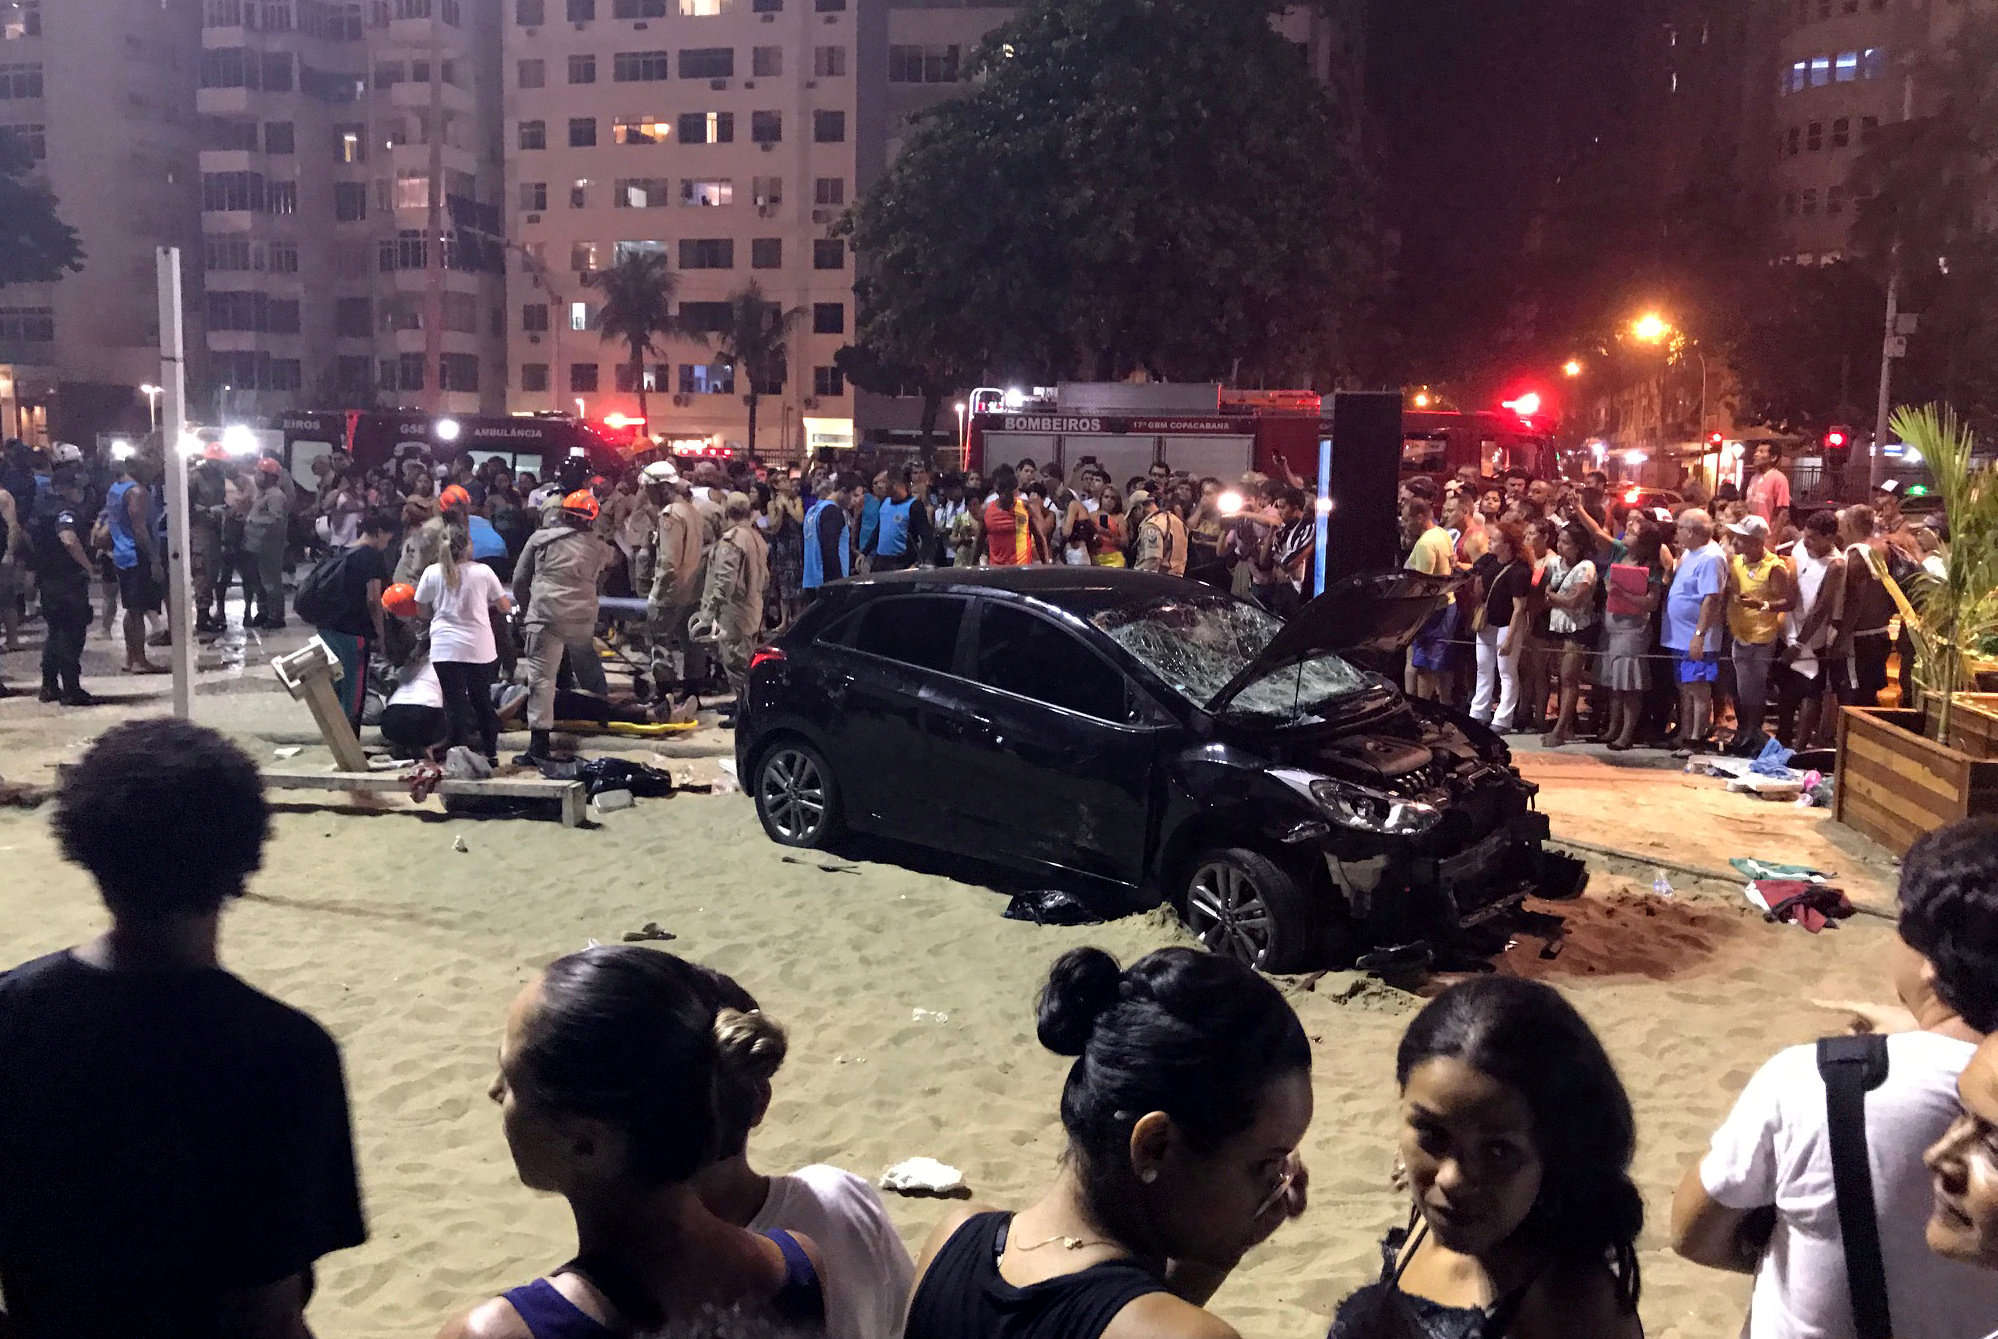 مجزرة على شاطئ ريو دي جانيرو بطلها مصاب بالصرع!!